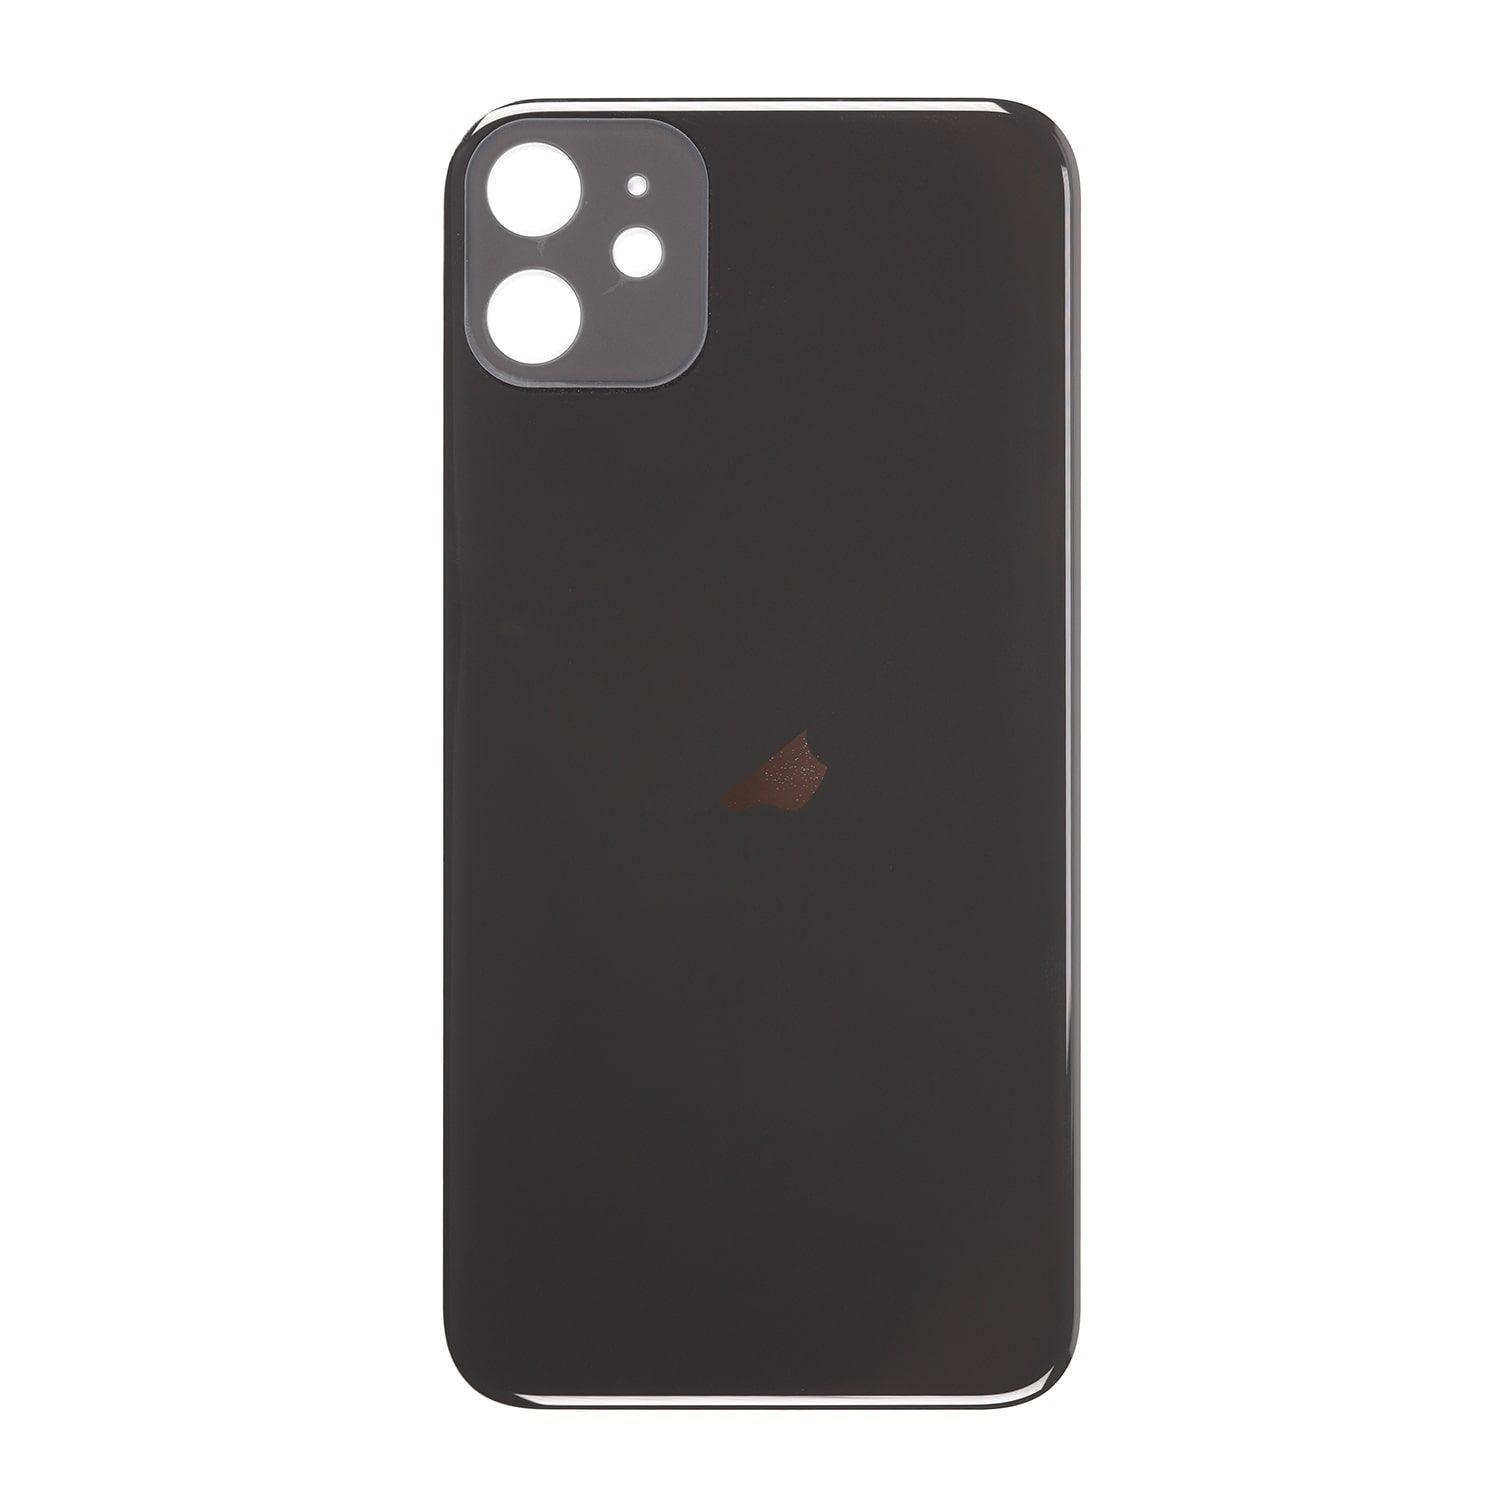 Kryt baterie iPhone 11 černý bez sklíčka kamery